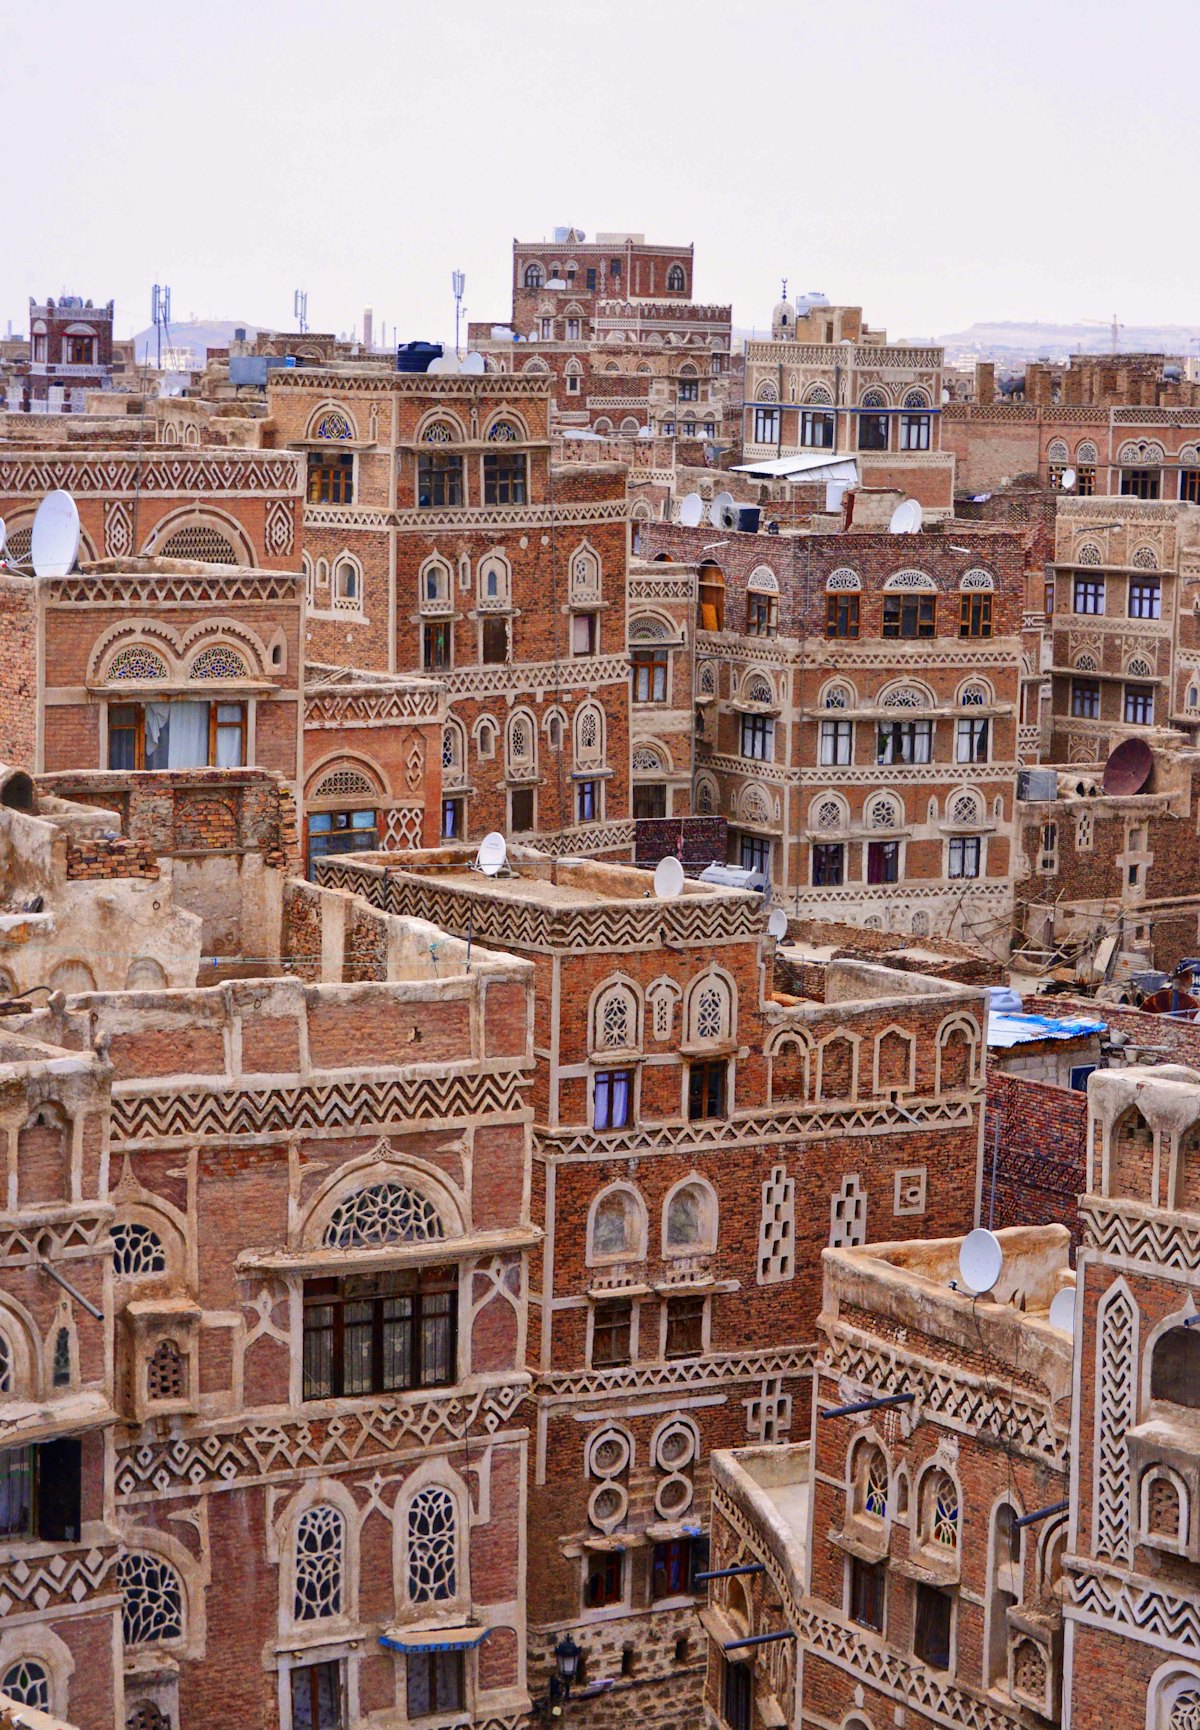 تصویری از شهر قدیمی صنعا در یمن. عکس از راد وادینگتون (Rod Waddington)